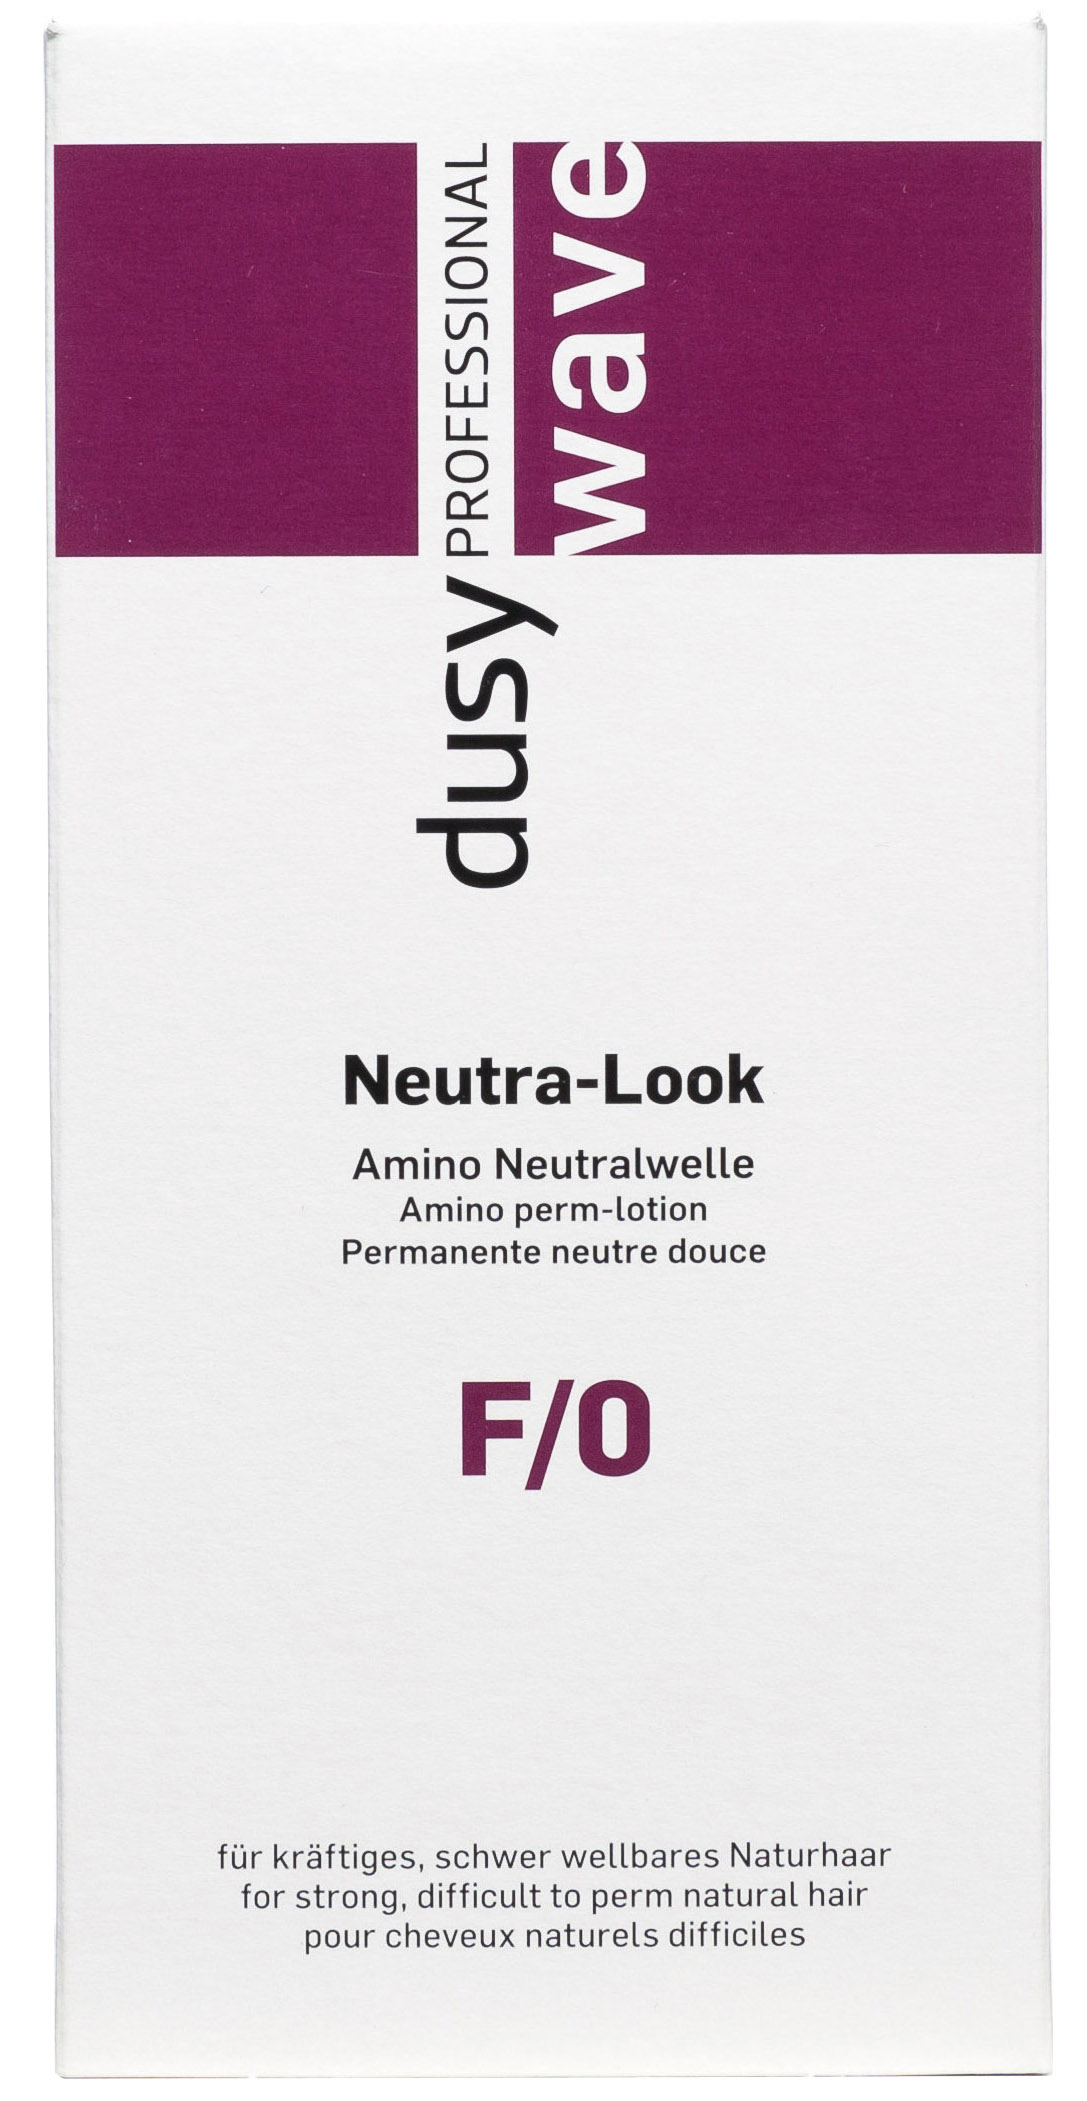 Dusy Neutra-Look mit Cystein, Dauerwelle Set,  (80ml DW + 100ml Fixierung)